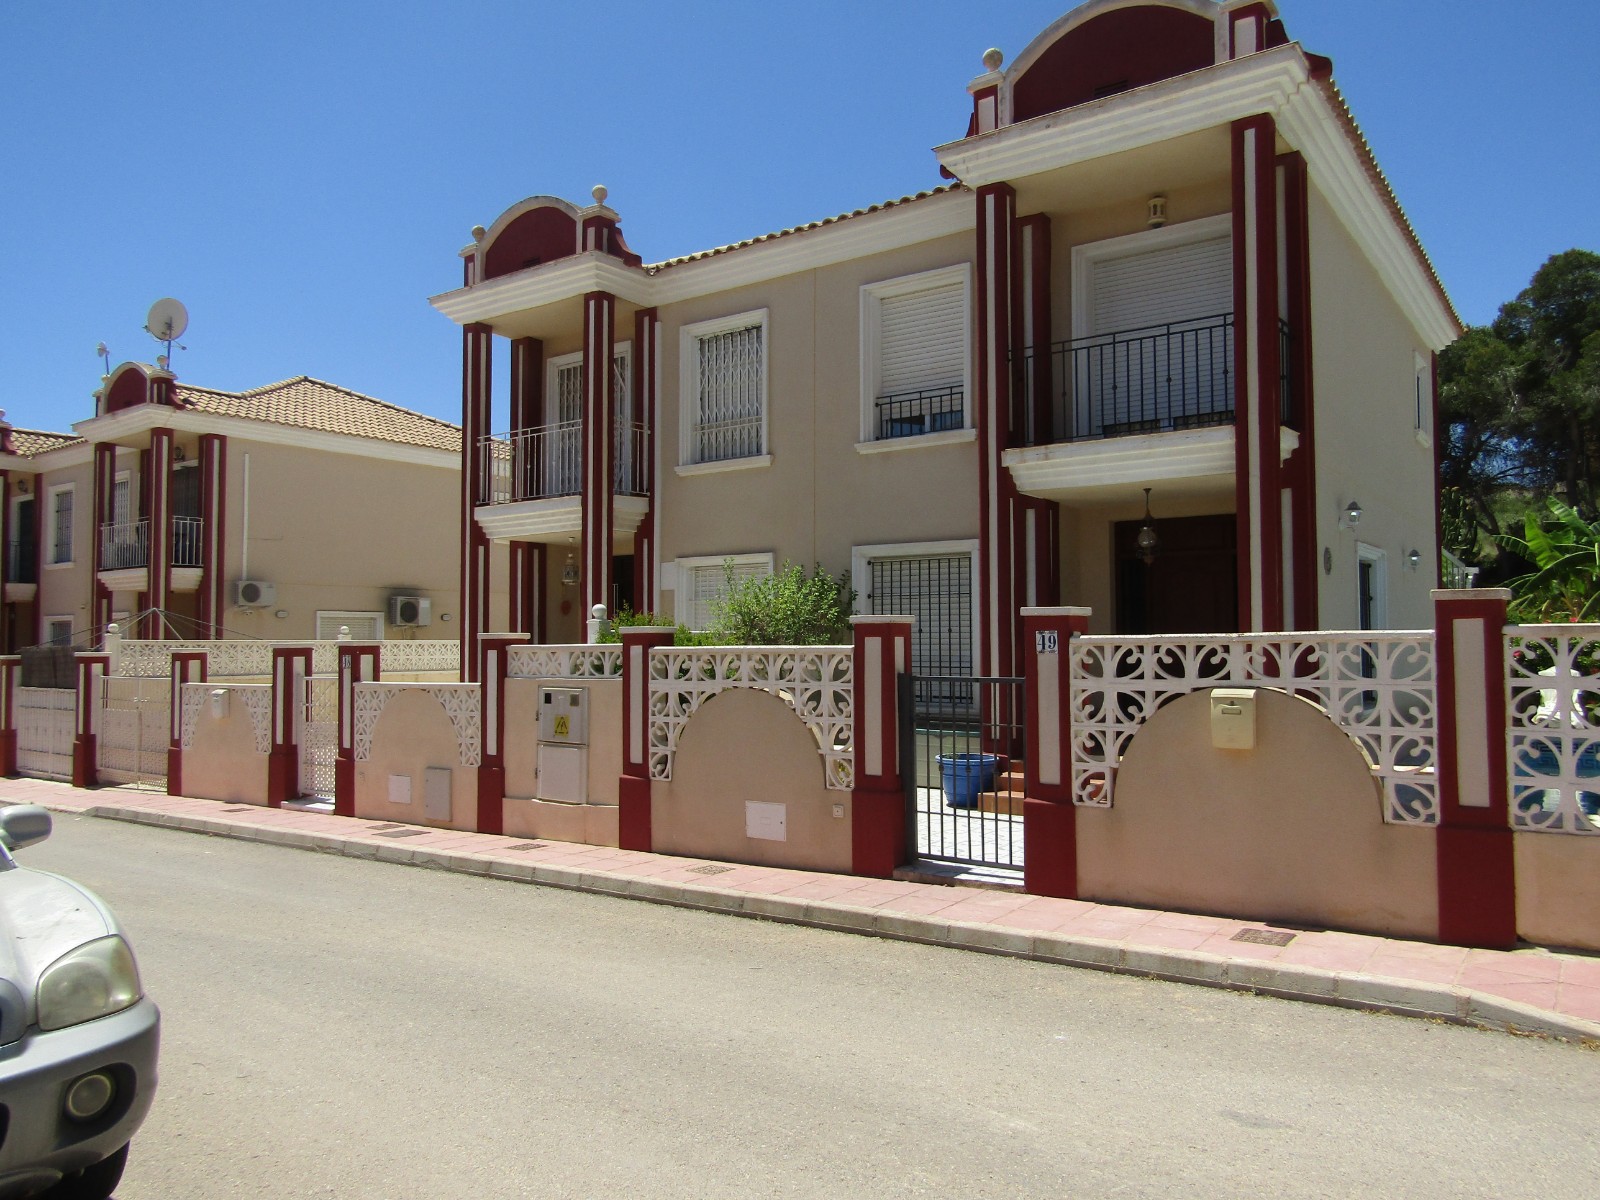 3 bedroom house / villa for sale in Orihuela Costa, Costa Blanca